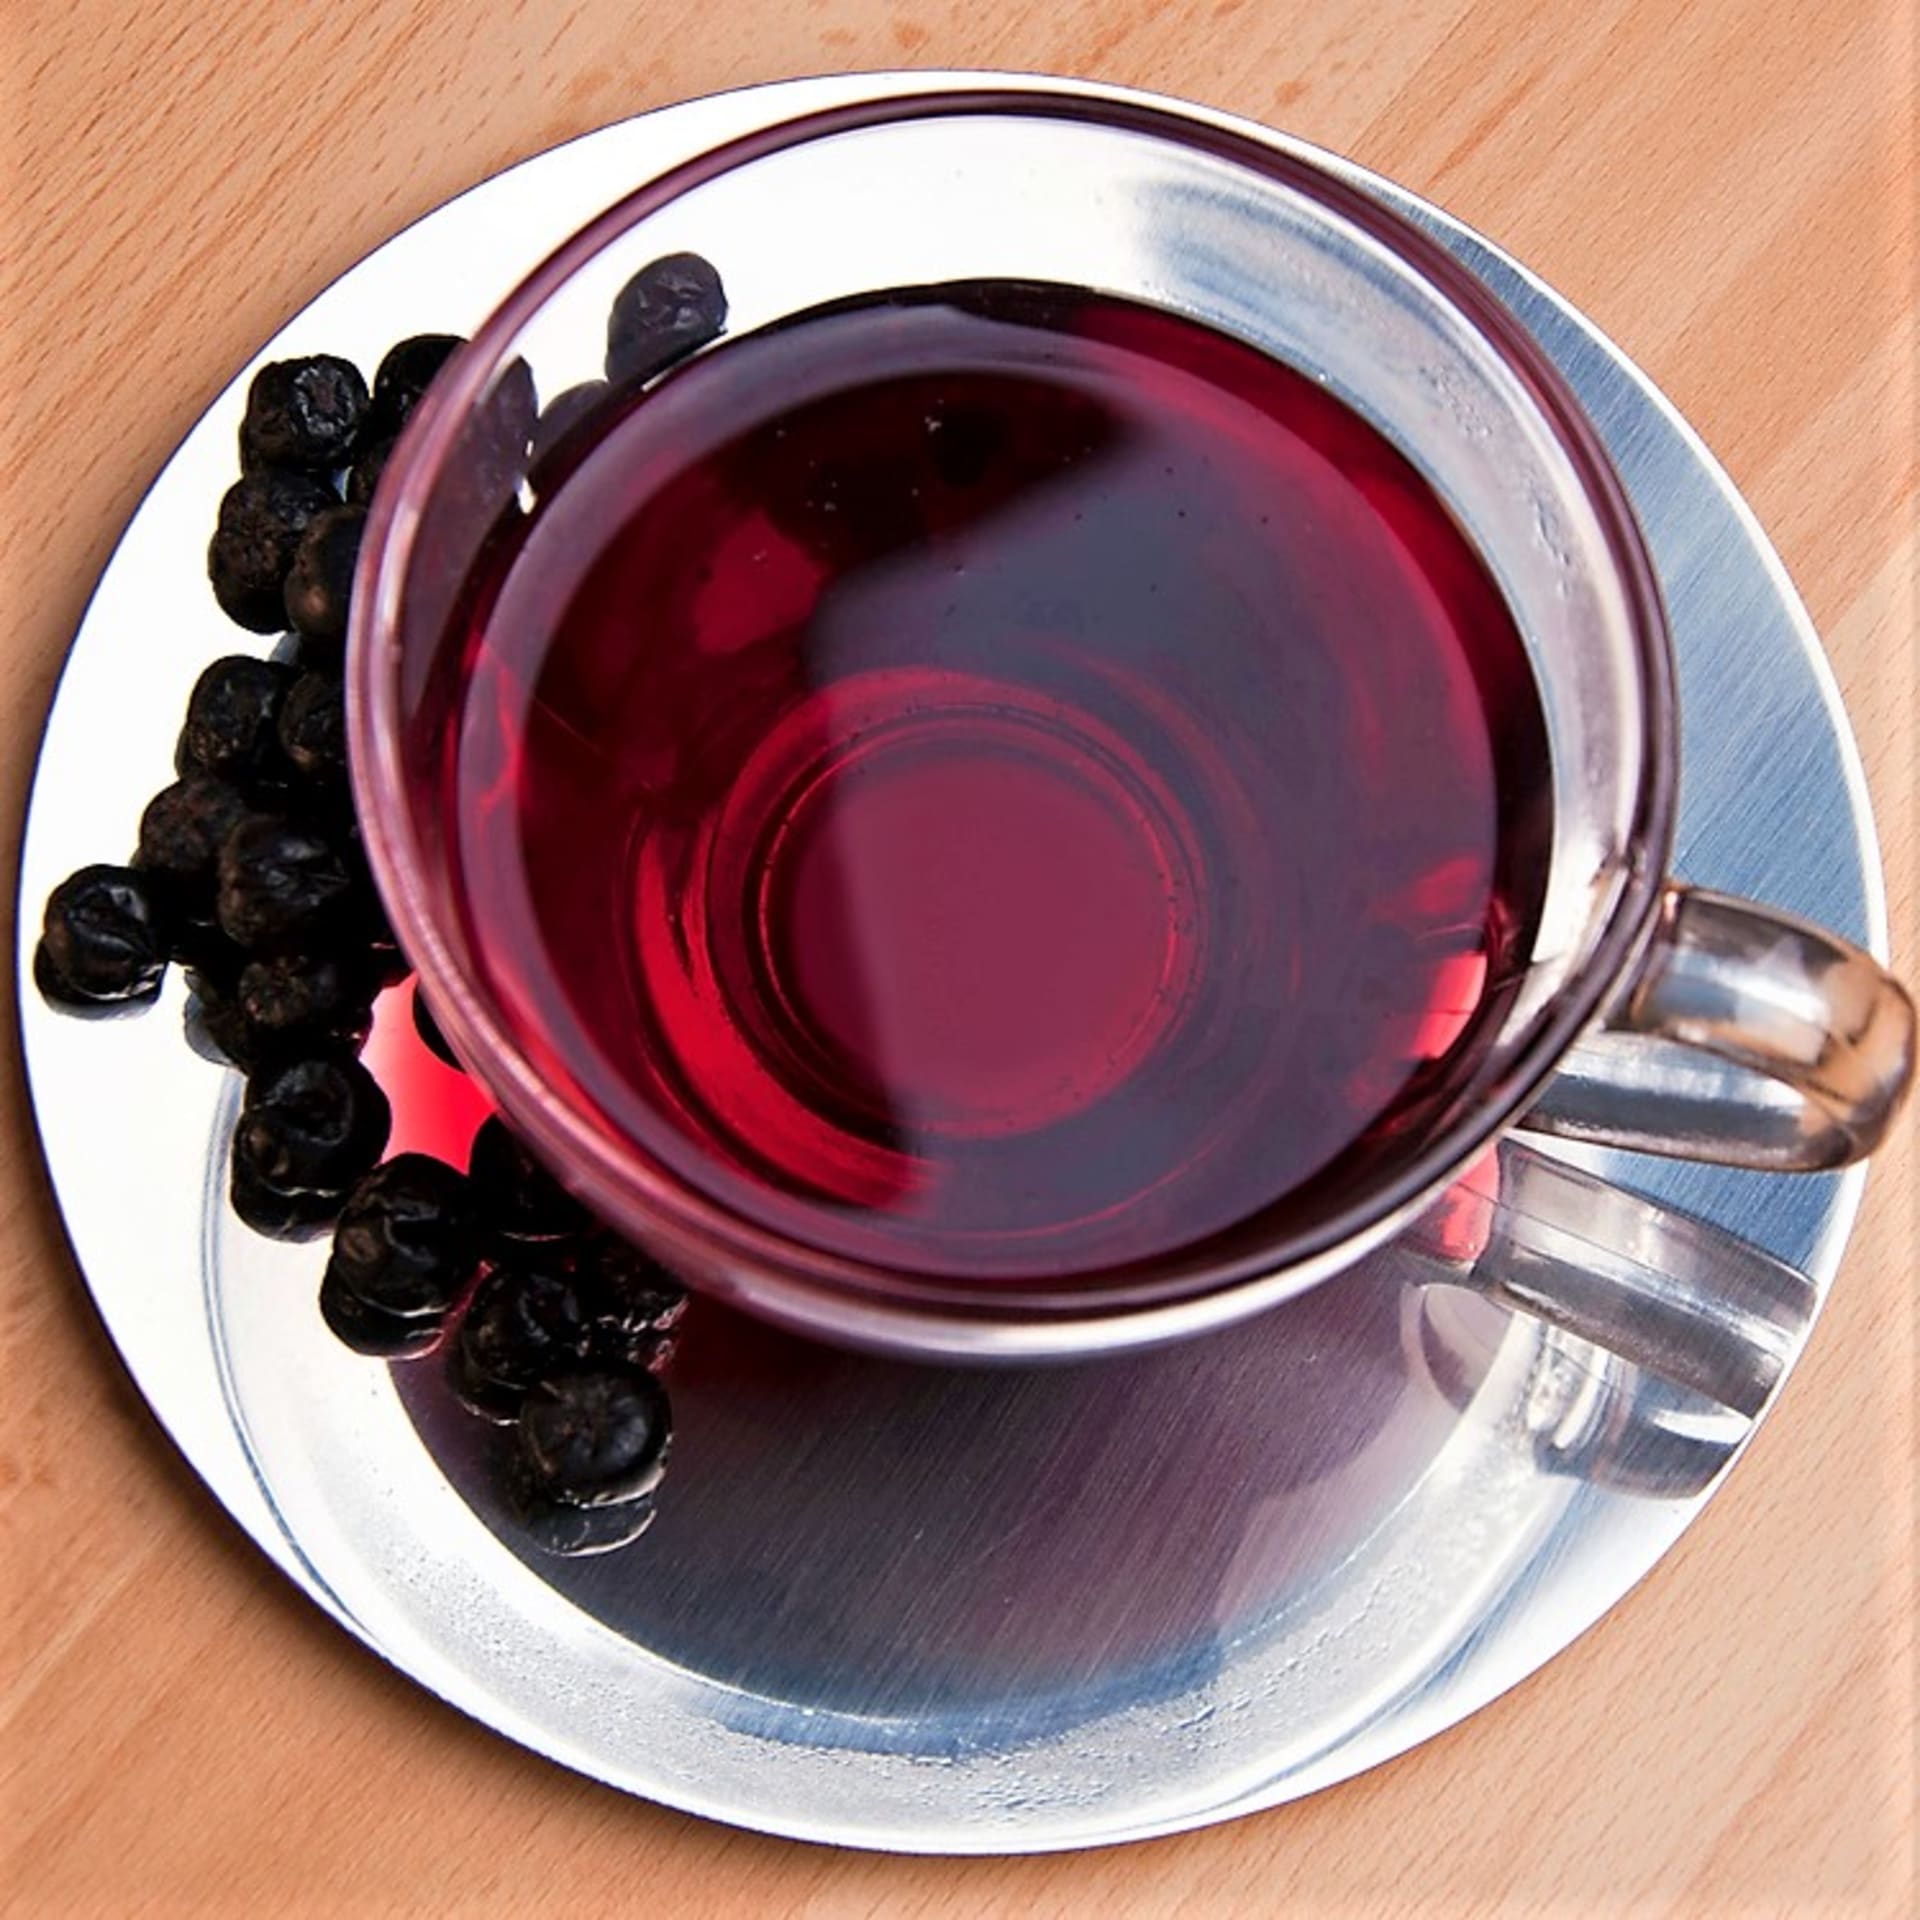 Čaj popíjíme během dne pro zlepšení krevního oběhu, posílení cév a na zvýšení imunity v podzimním období, kdy řádí choroby z nachlazení. 